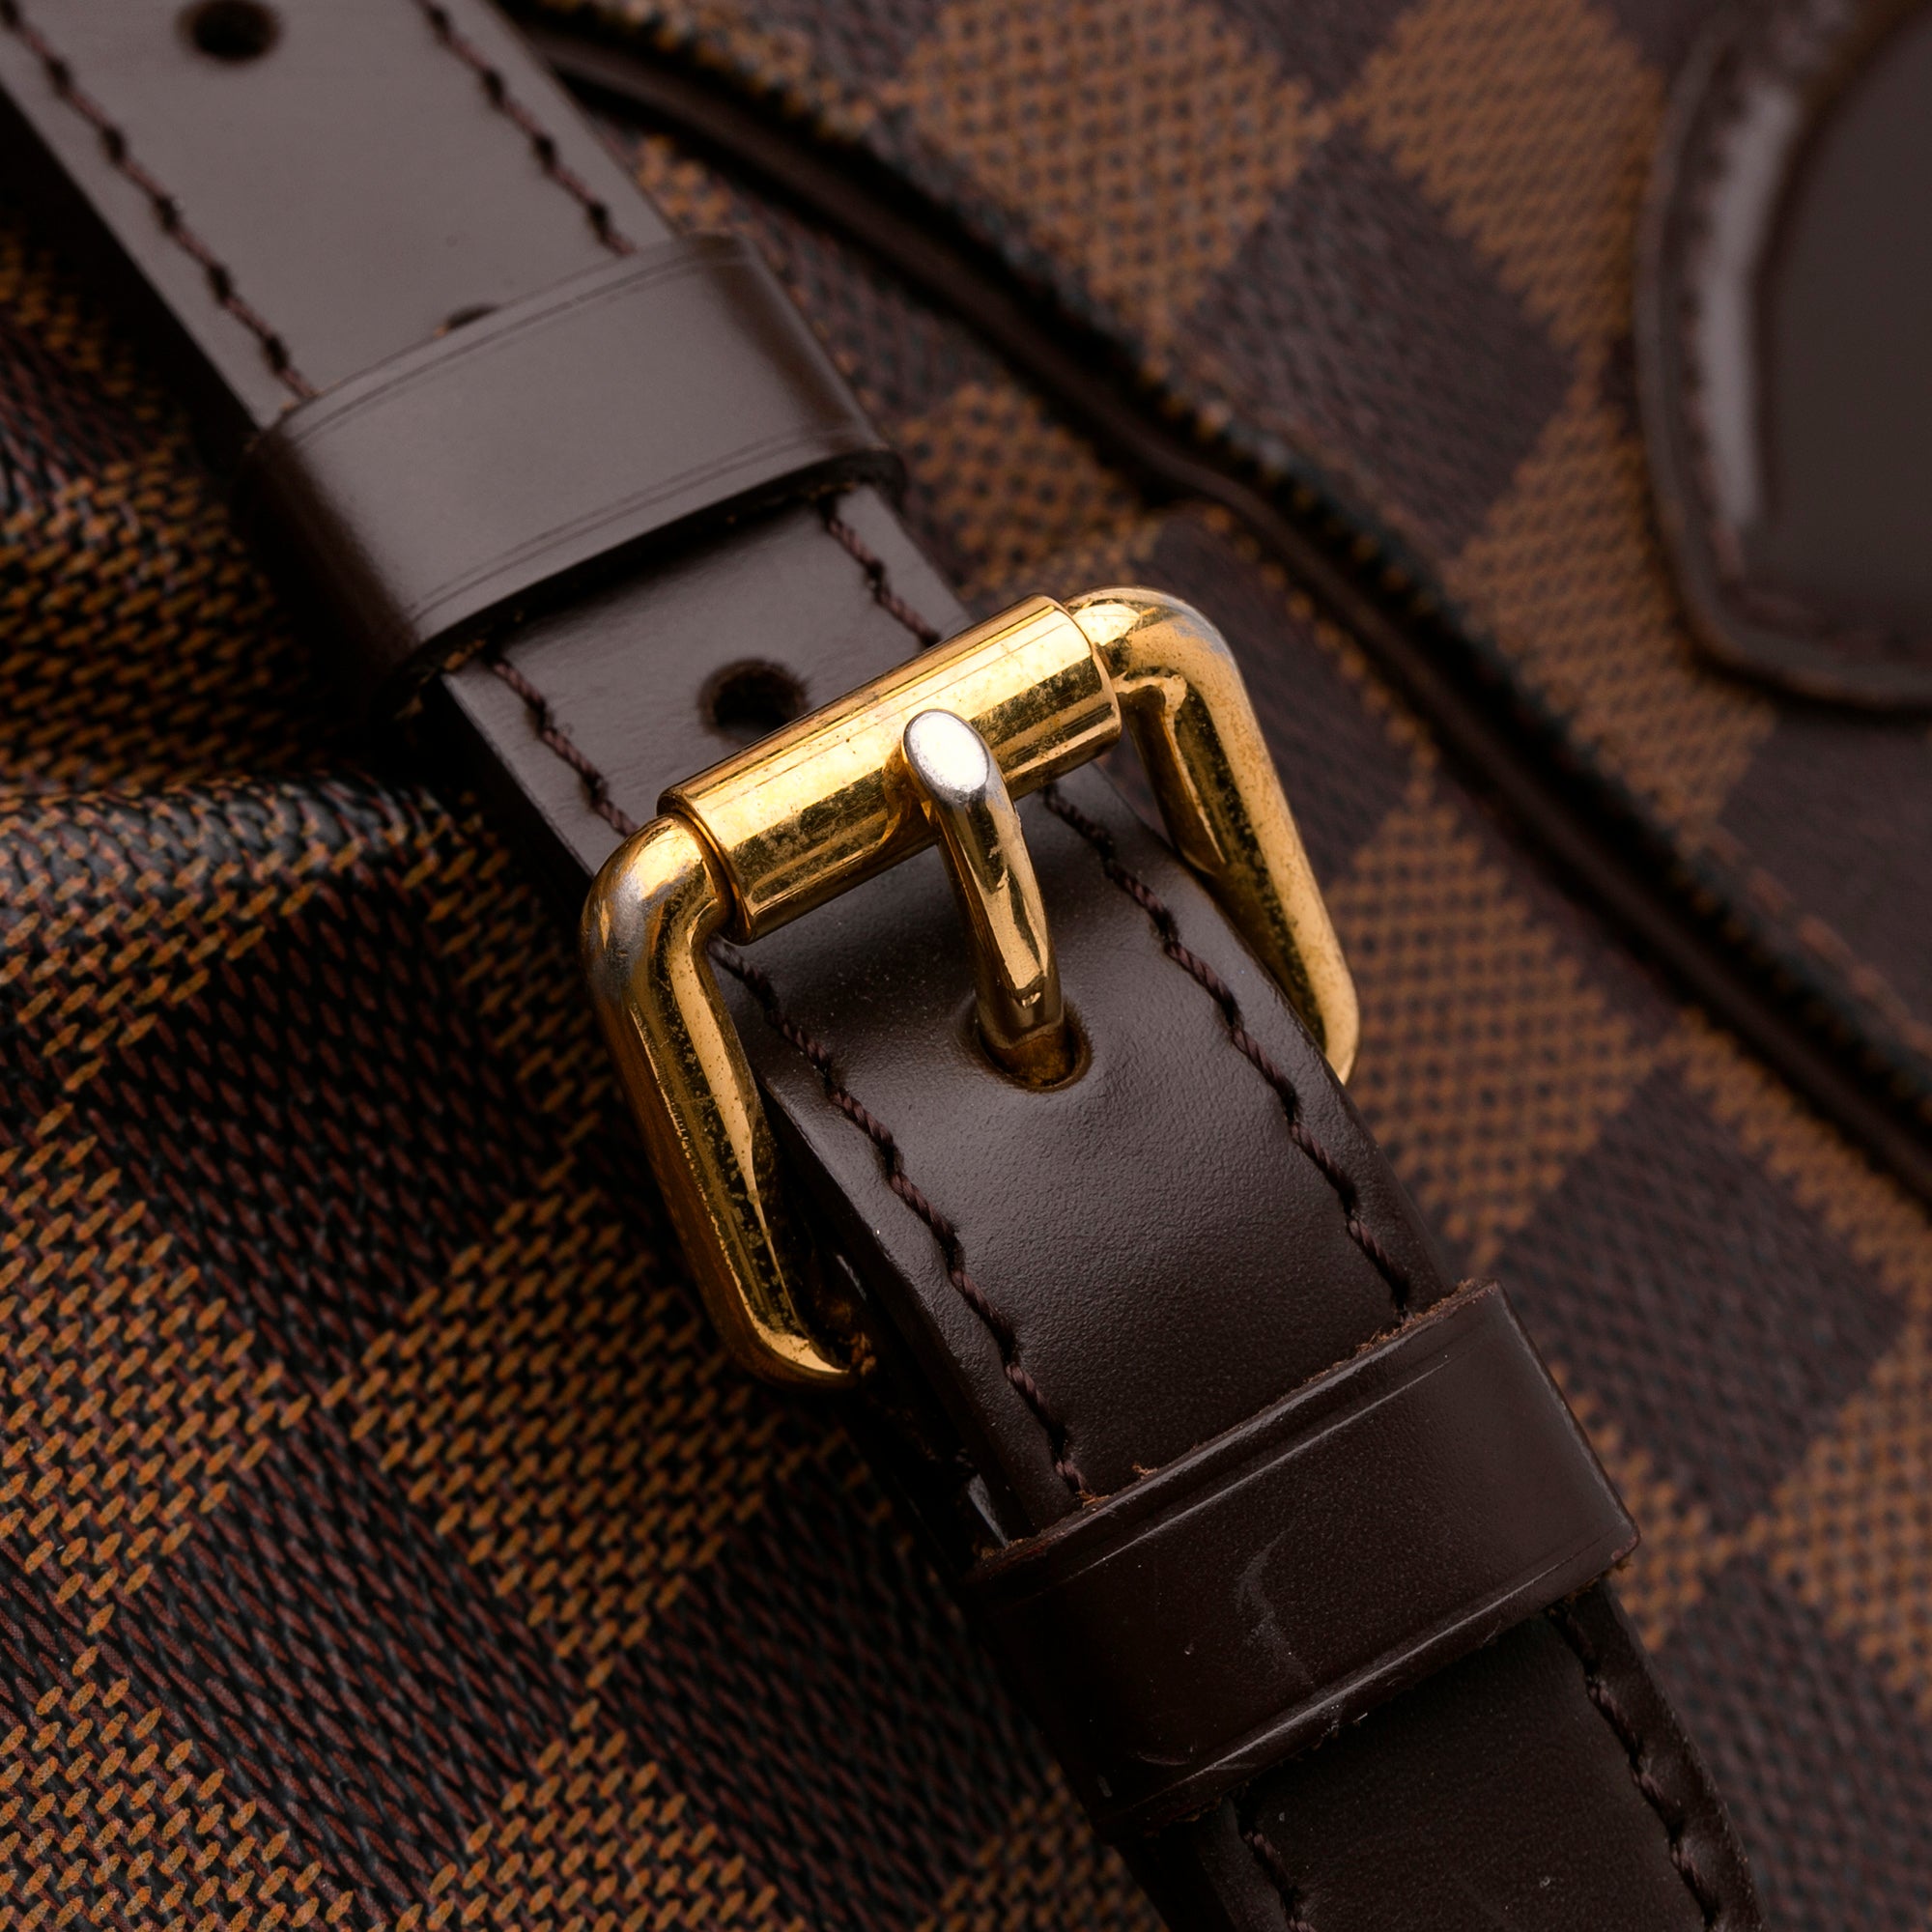 Louis Vuitton Pre-Loved Damier Ebene Trevi GM bag for Women